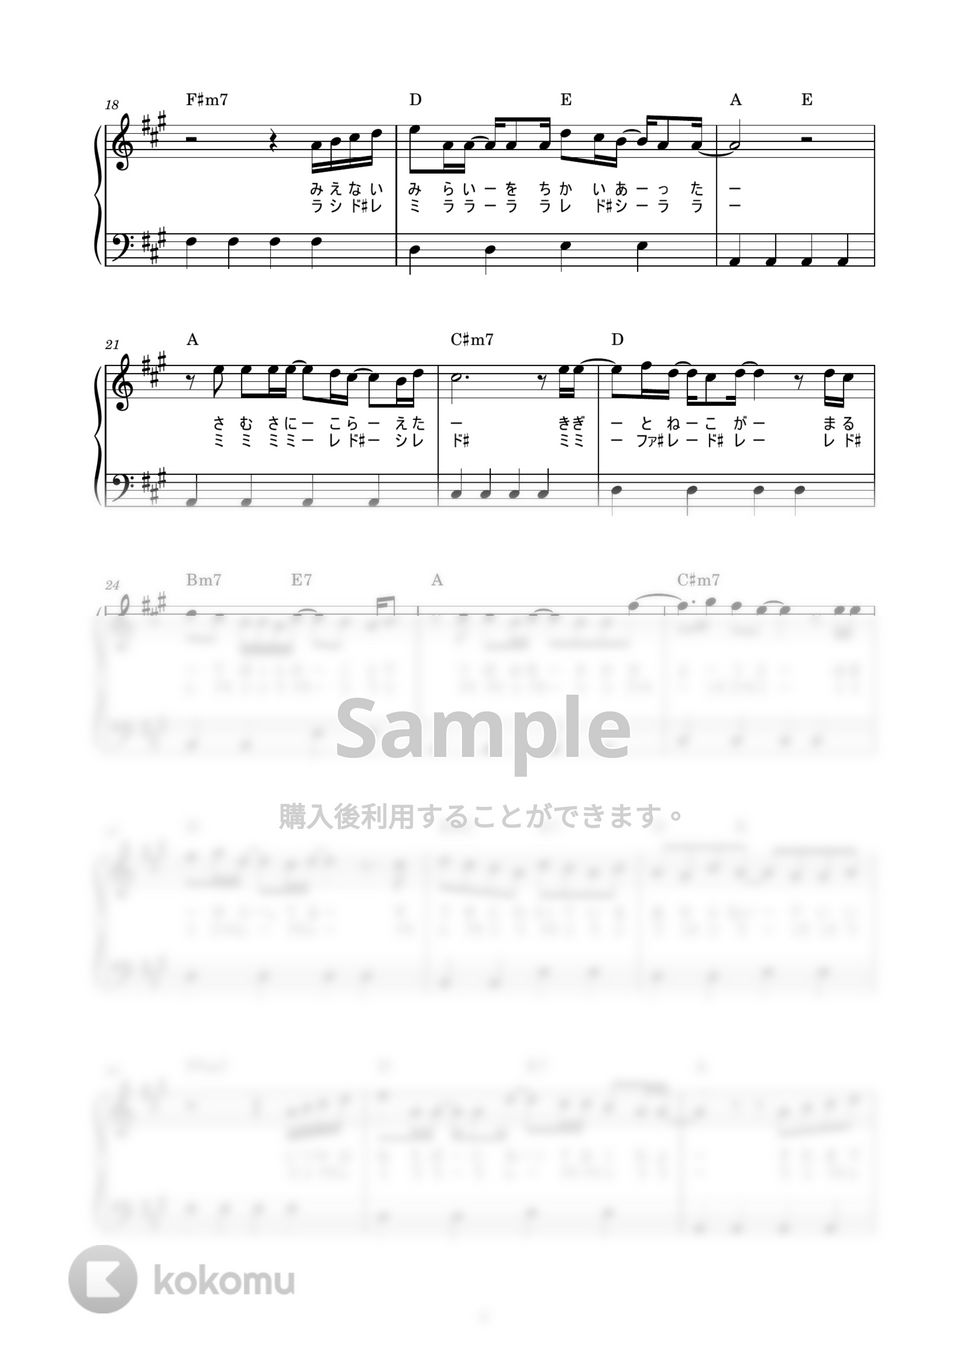 あいみょん - ハルノヒ (かんたん / 歌詞付き / ドレミ付き / 初心者) by piano.tokyo